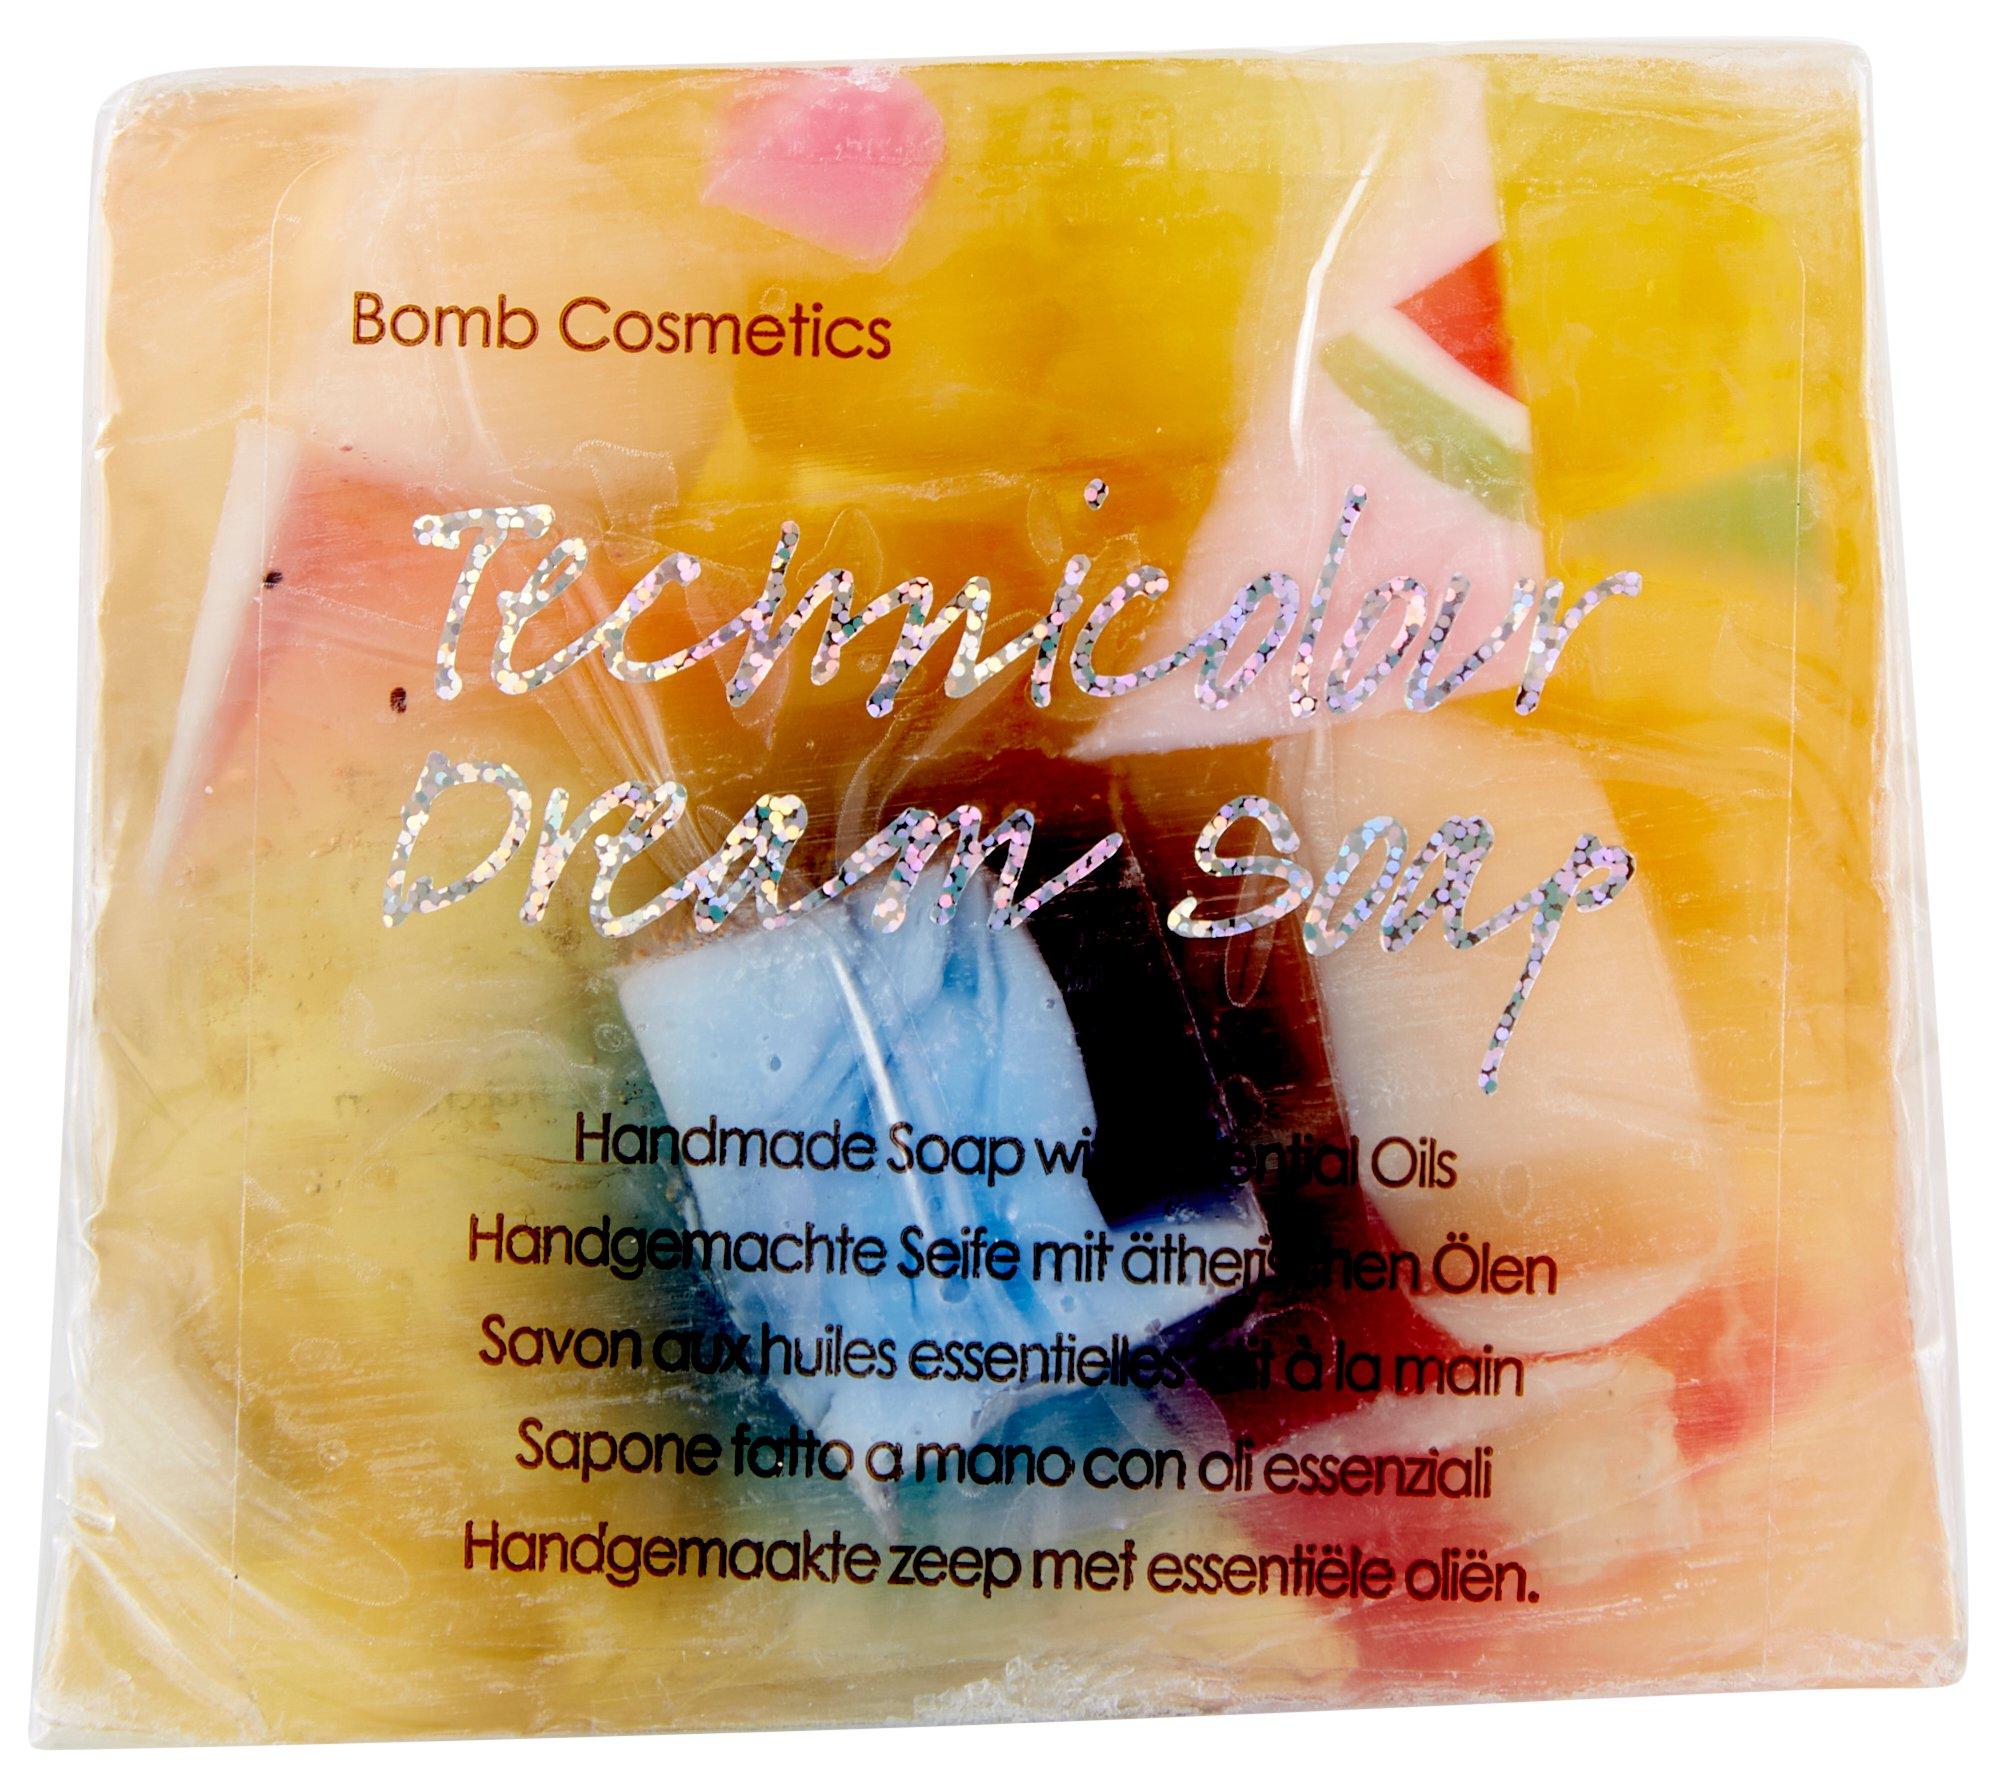 Technicolor Dream Handmade Soap 3.5 oz.